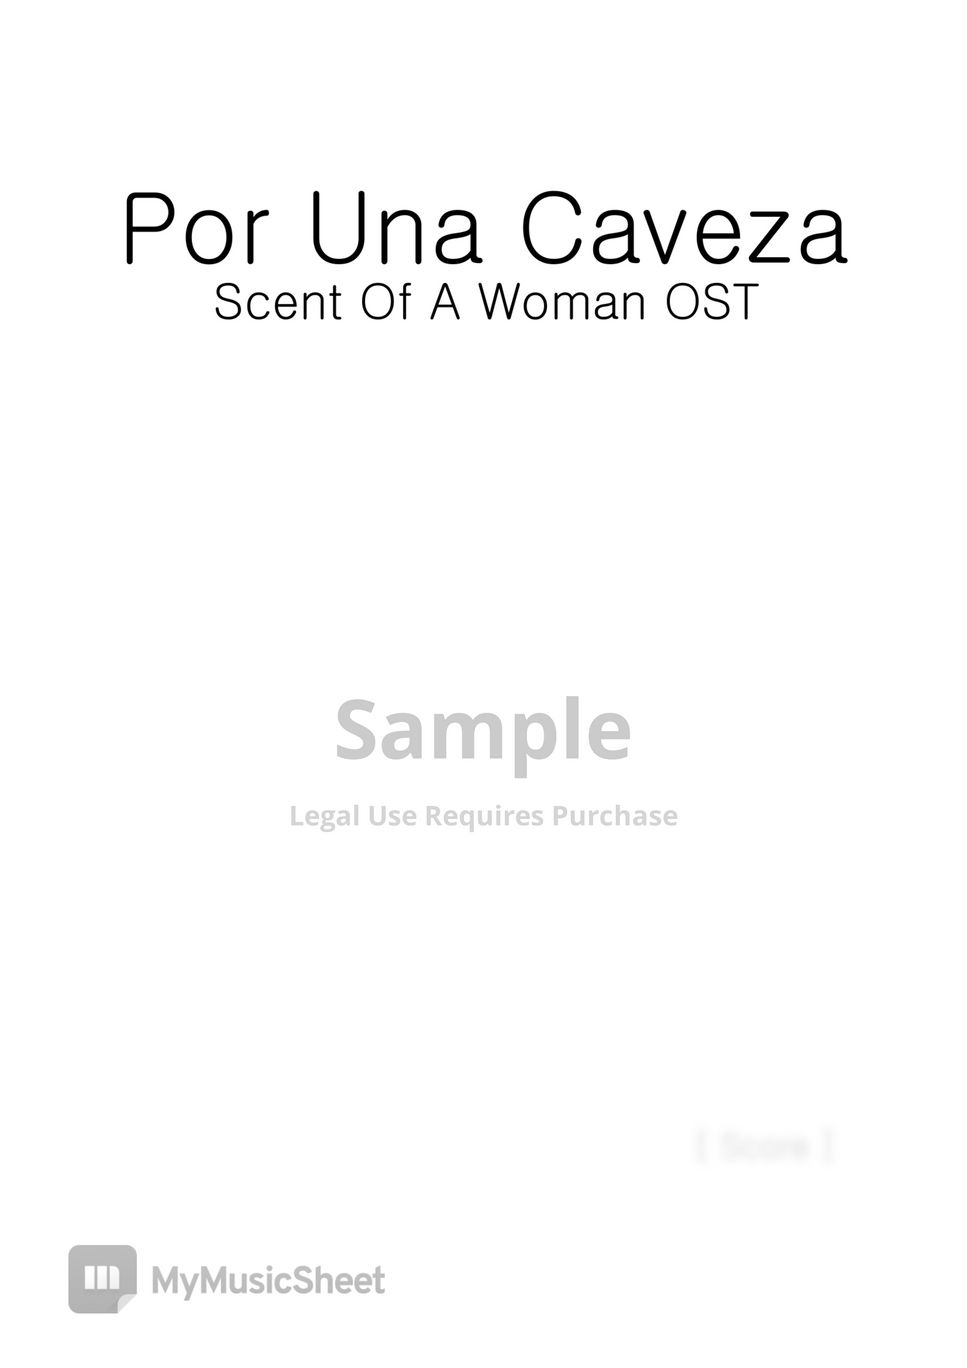 Carlos Gardel - Por Una Cabeza 'Scent of a Woman' by VIO